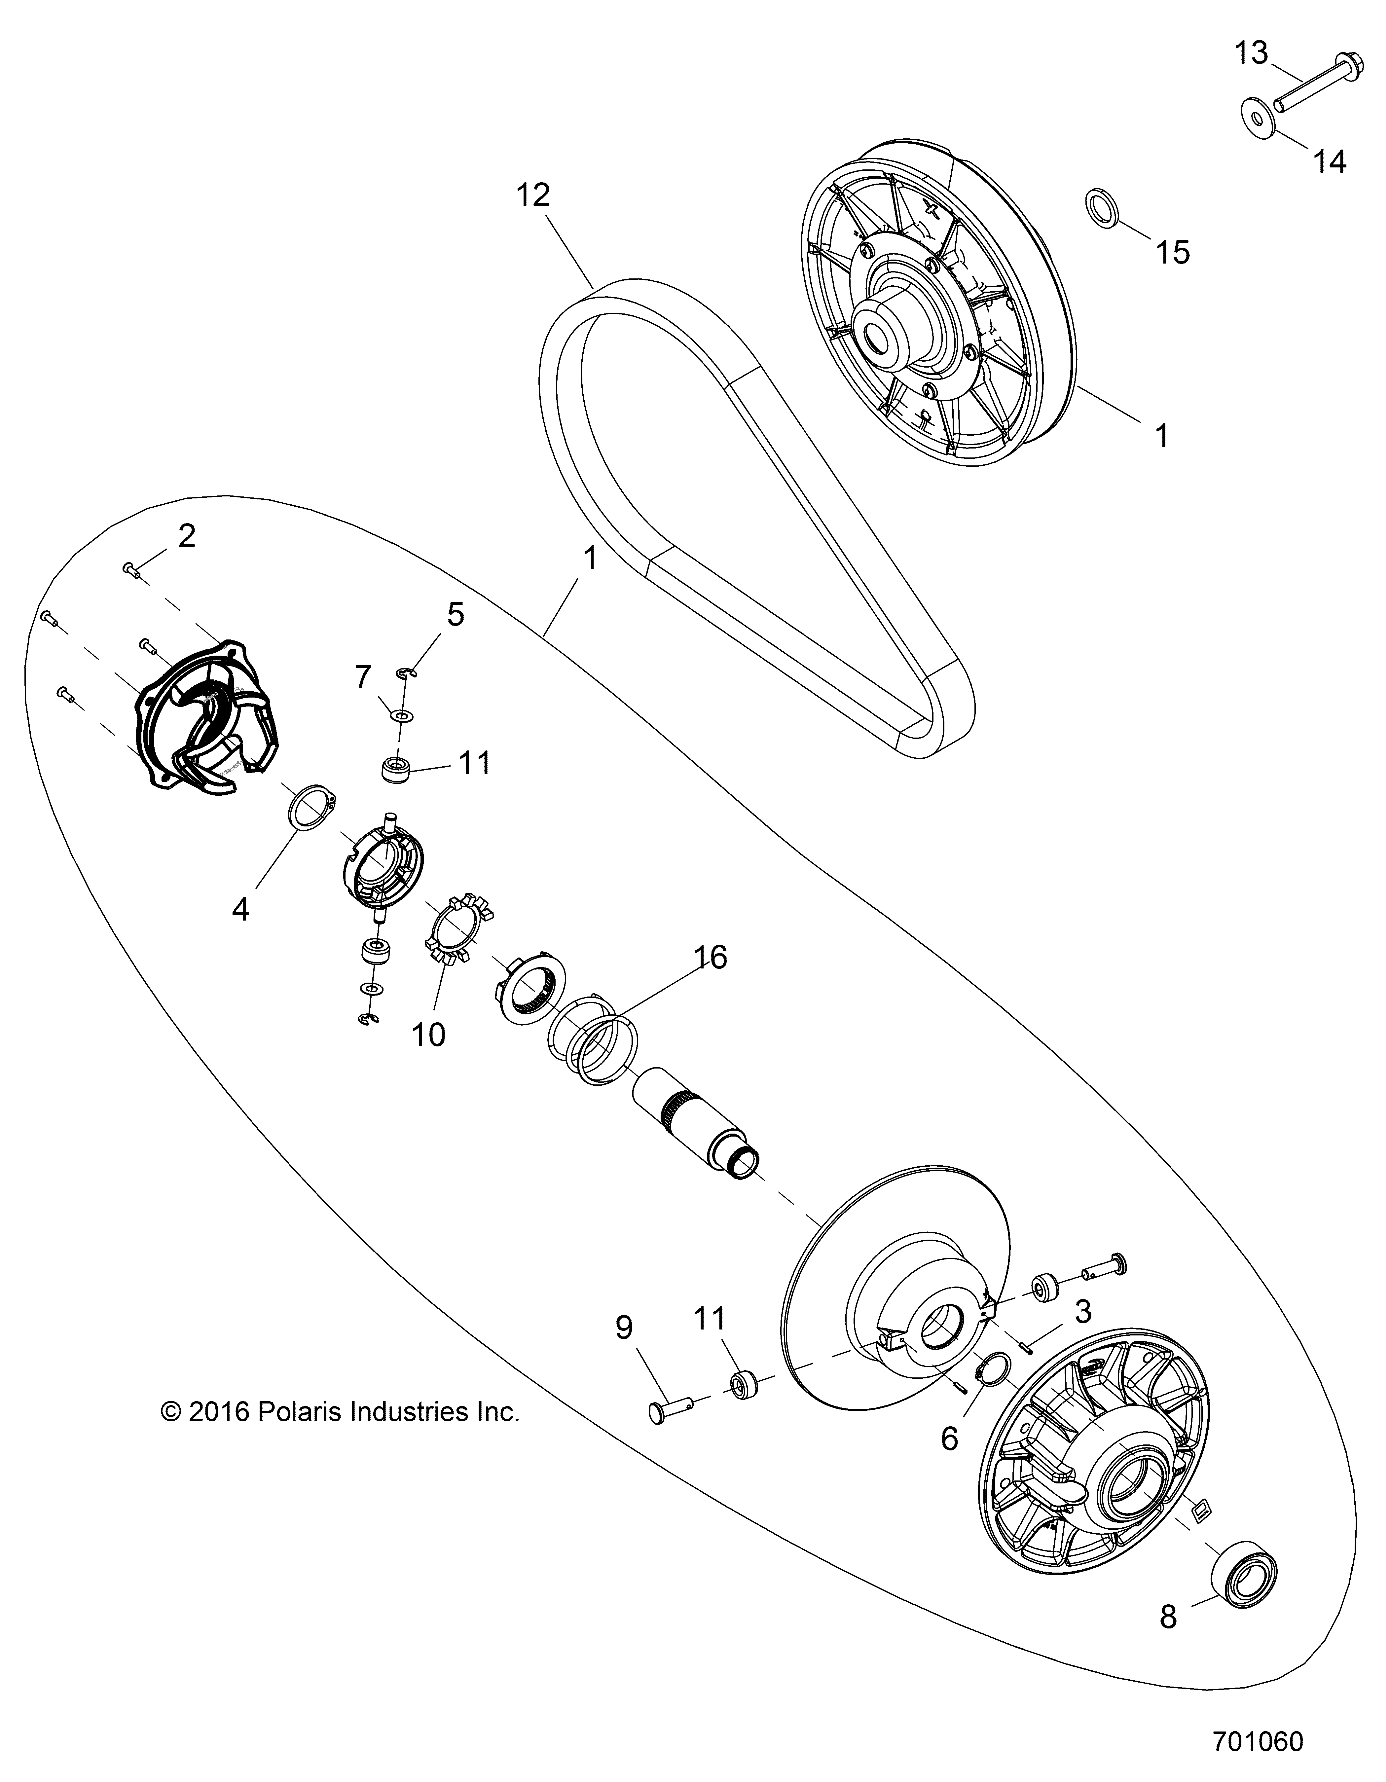 Foto diagrama Polaris que contem a peça 7520408